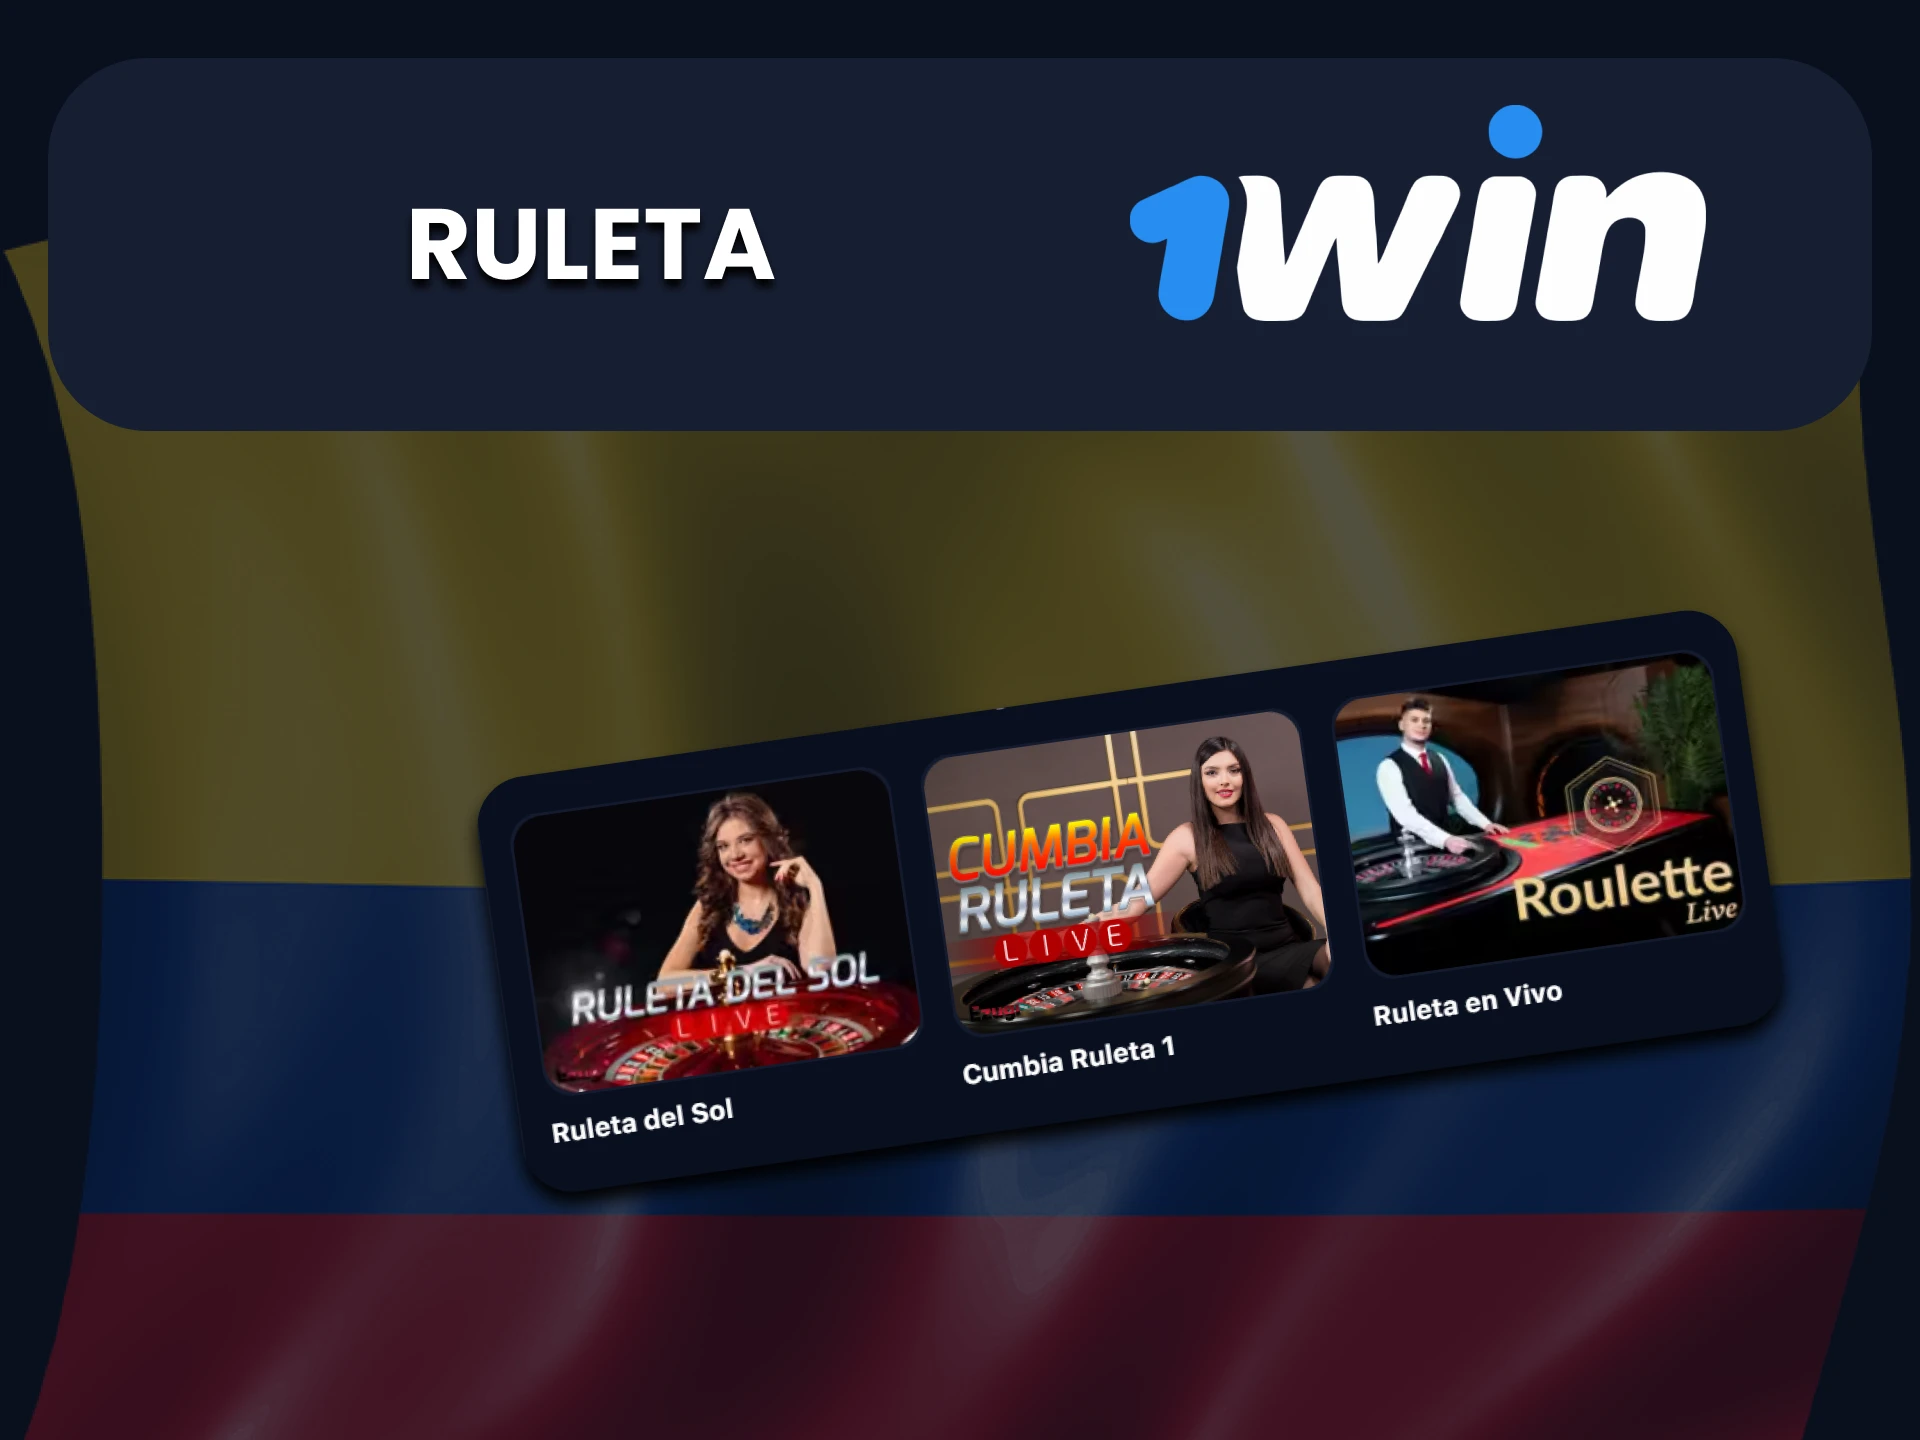 Para juegos en la sección de casino en vivo de 1win, elija Ruleta.